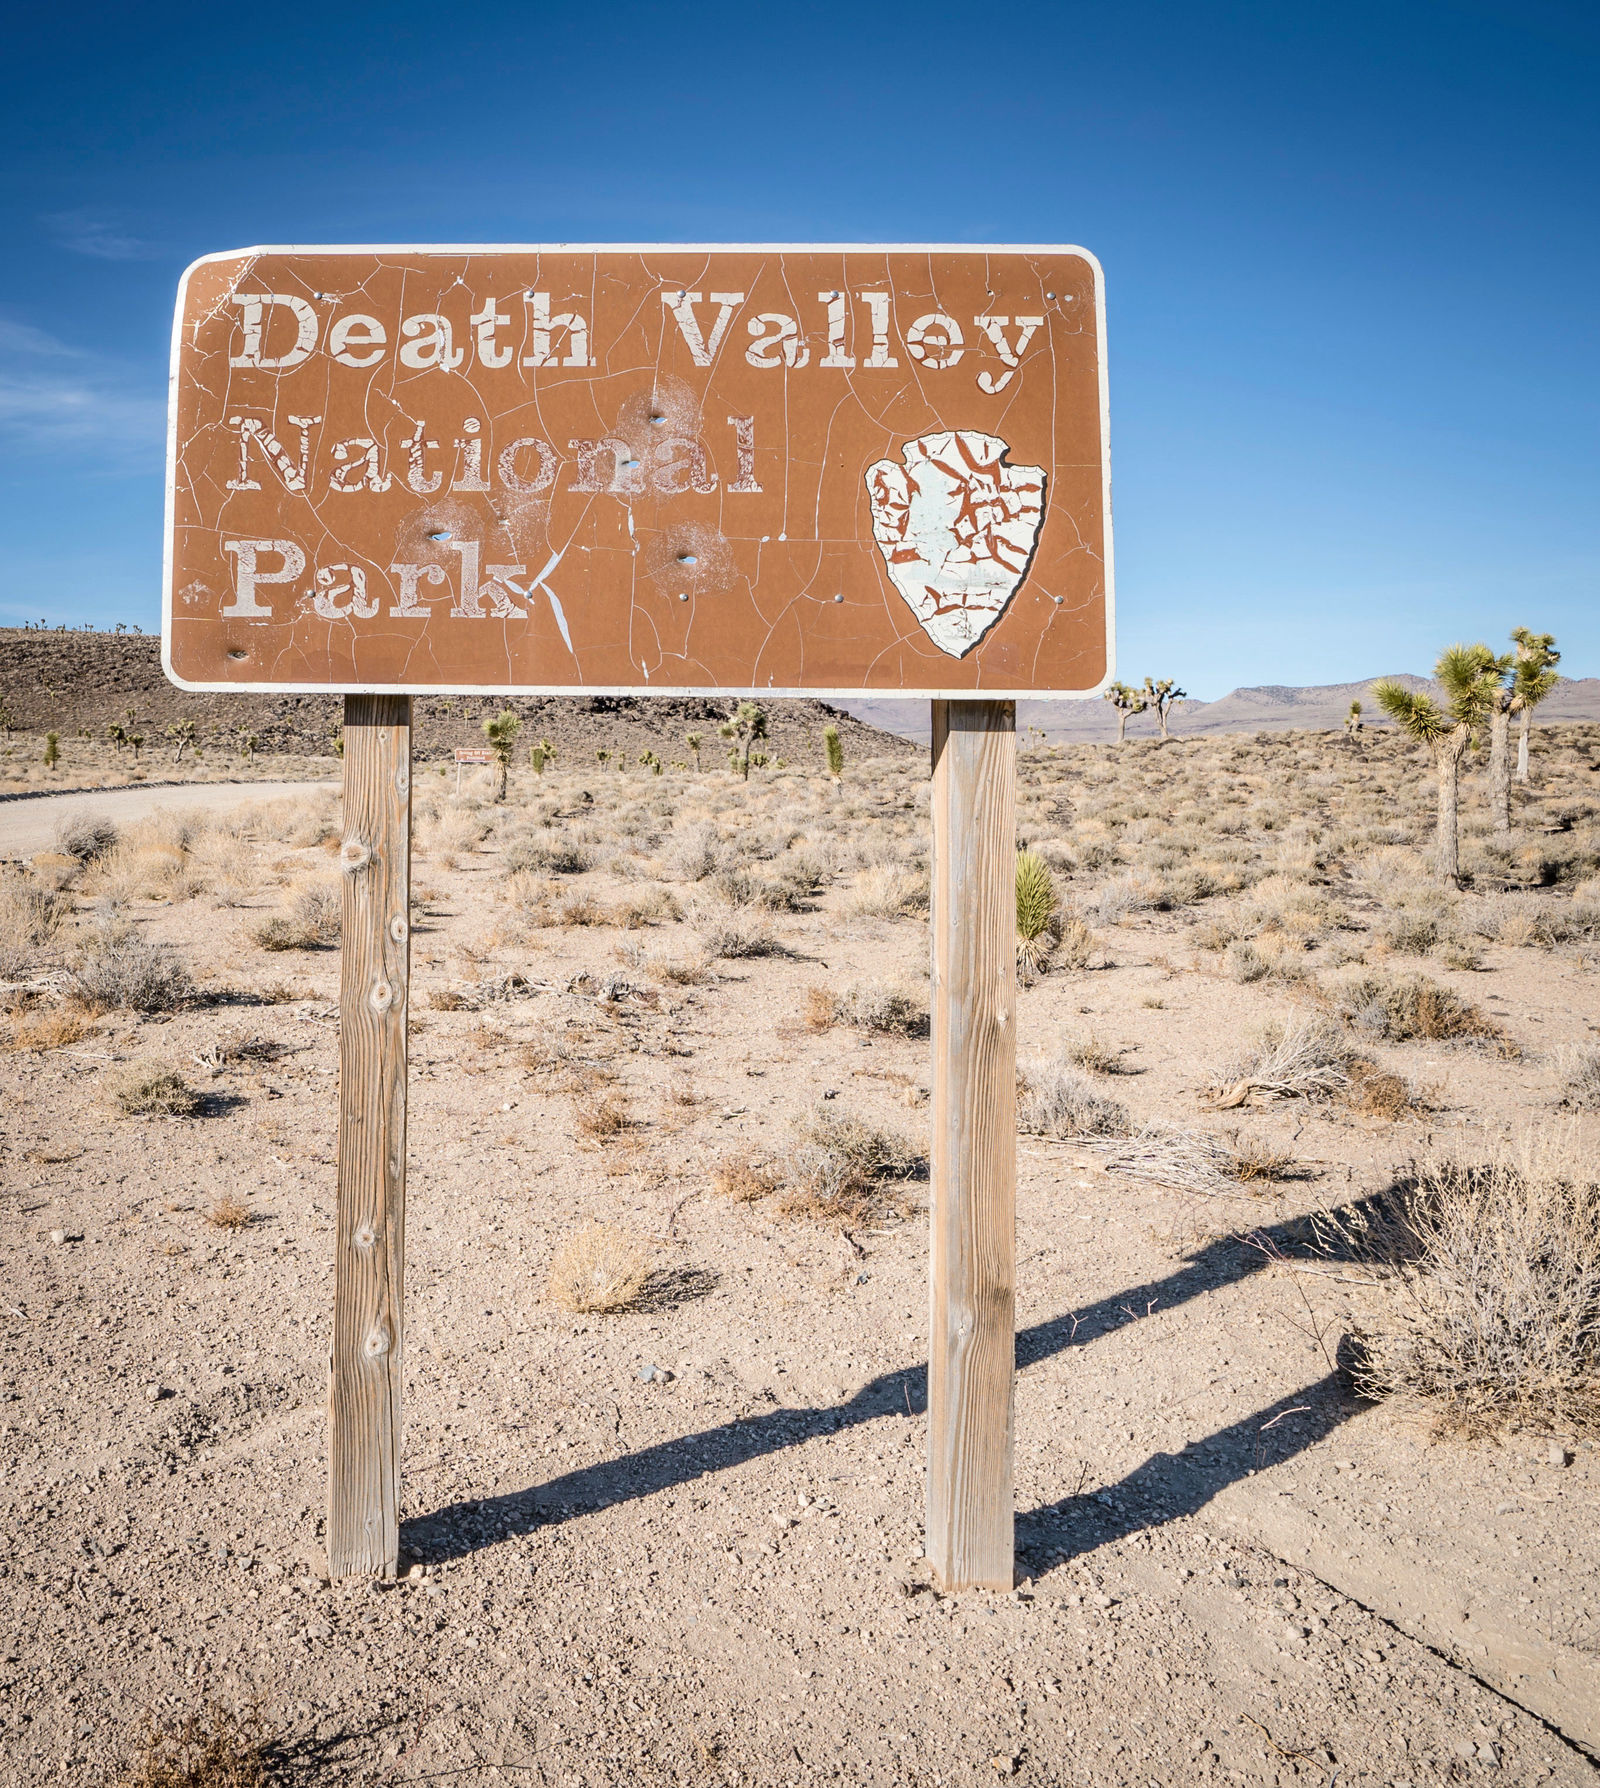 Story: Mit dem Golf Alltrack durch das Death Valley